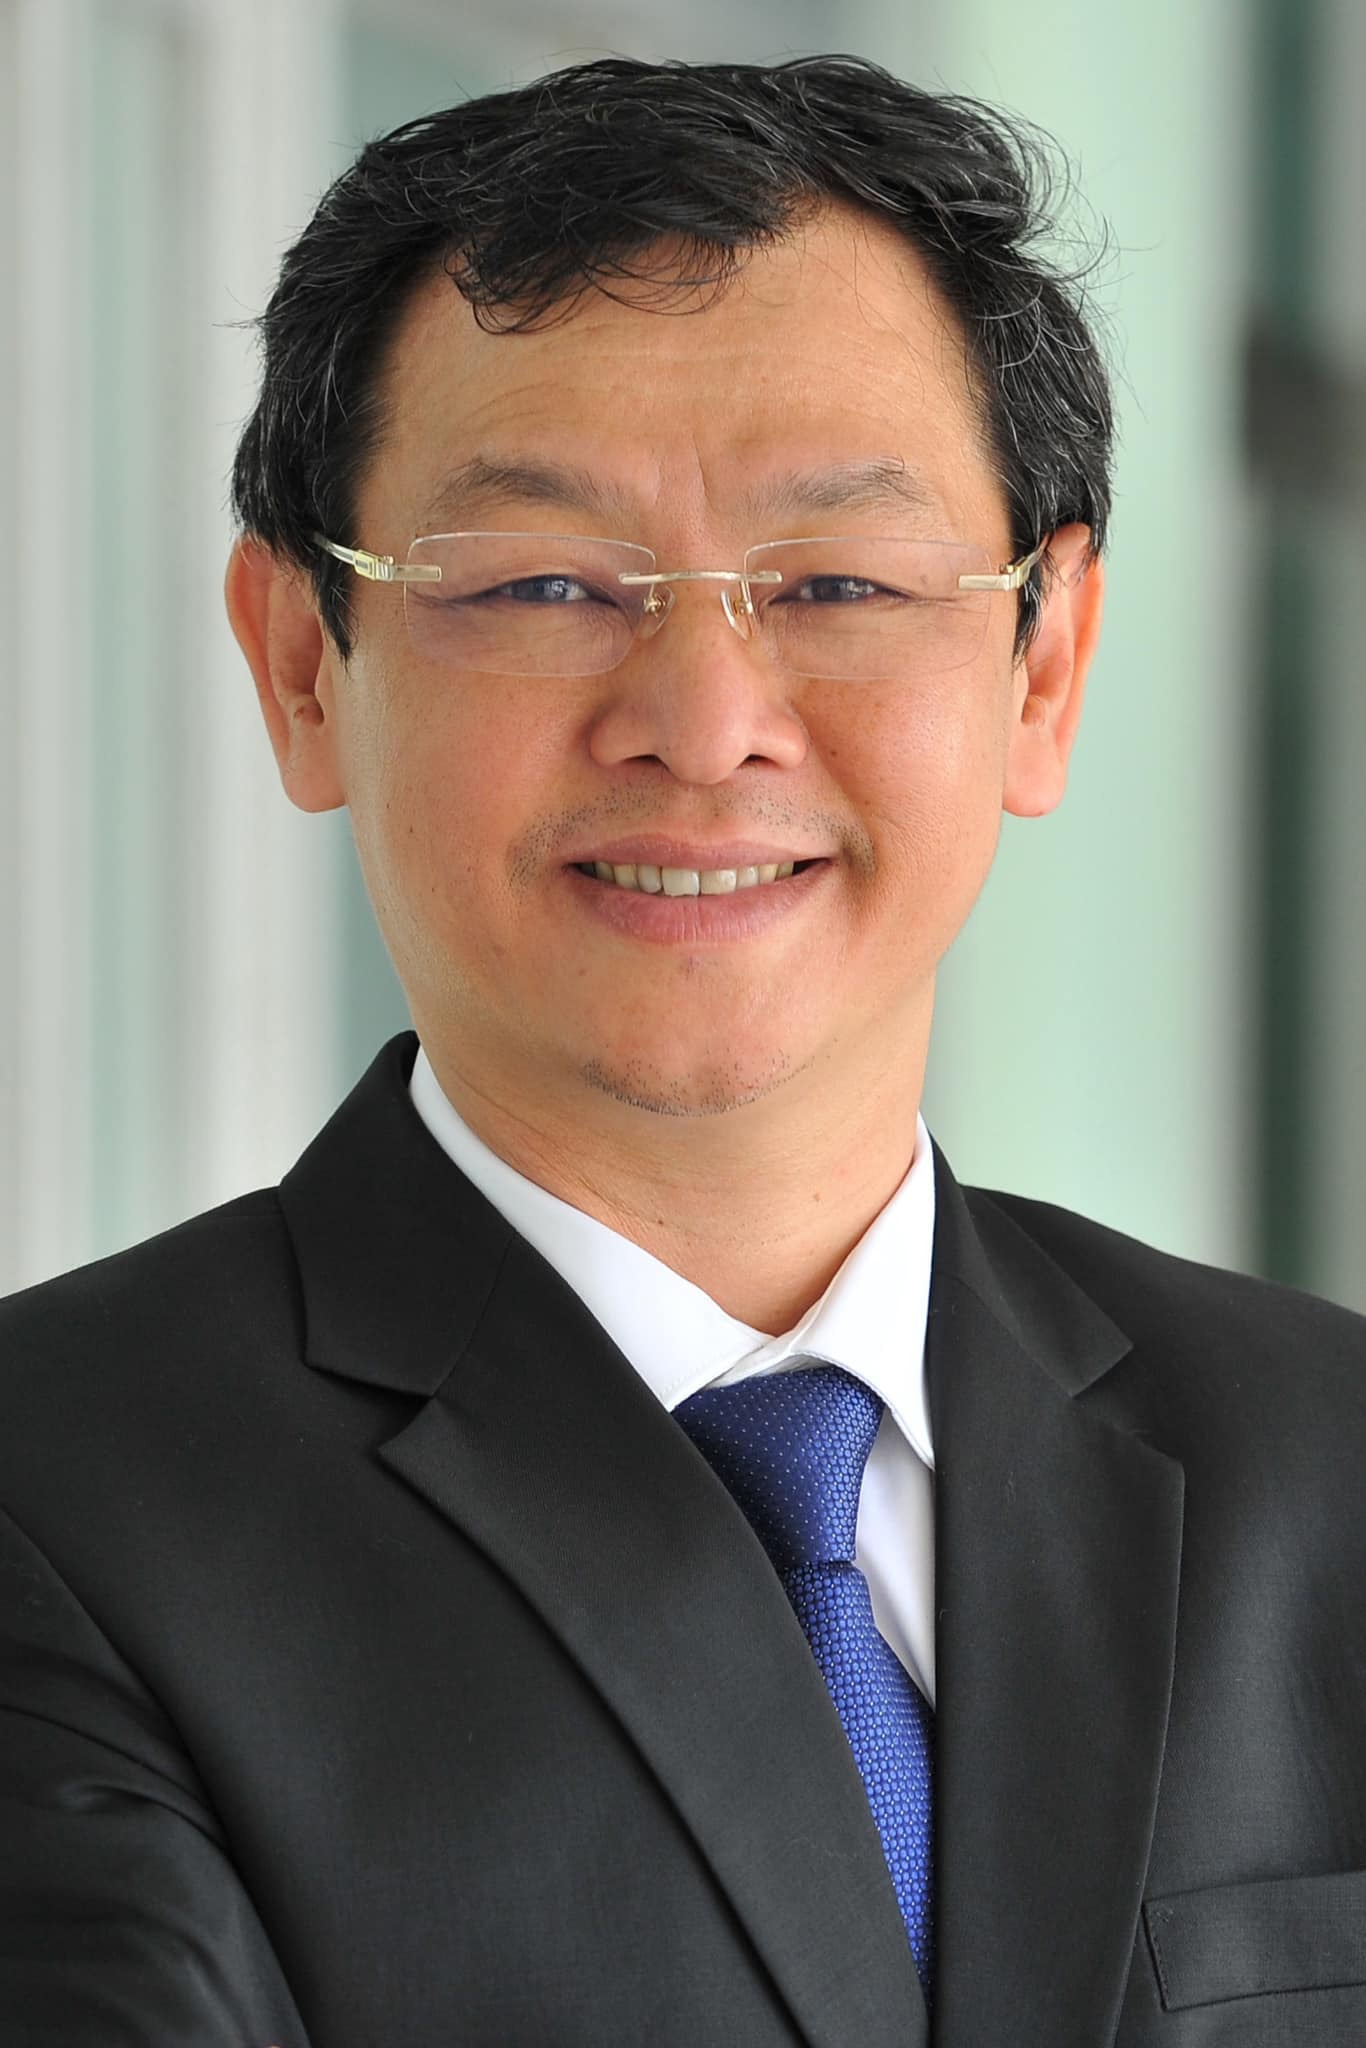 Ông Nguyễn Tri Thức, giám đốc Bệnh viện Chợ Rẫy (Bộ Y tế), giữ chức thứ trưởng Bộ Y tế - Ảnh: Bệnh viện cung cấp